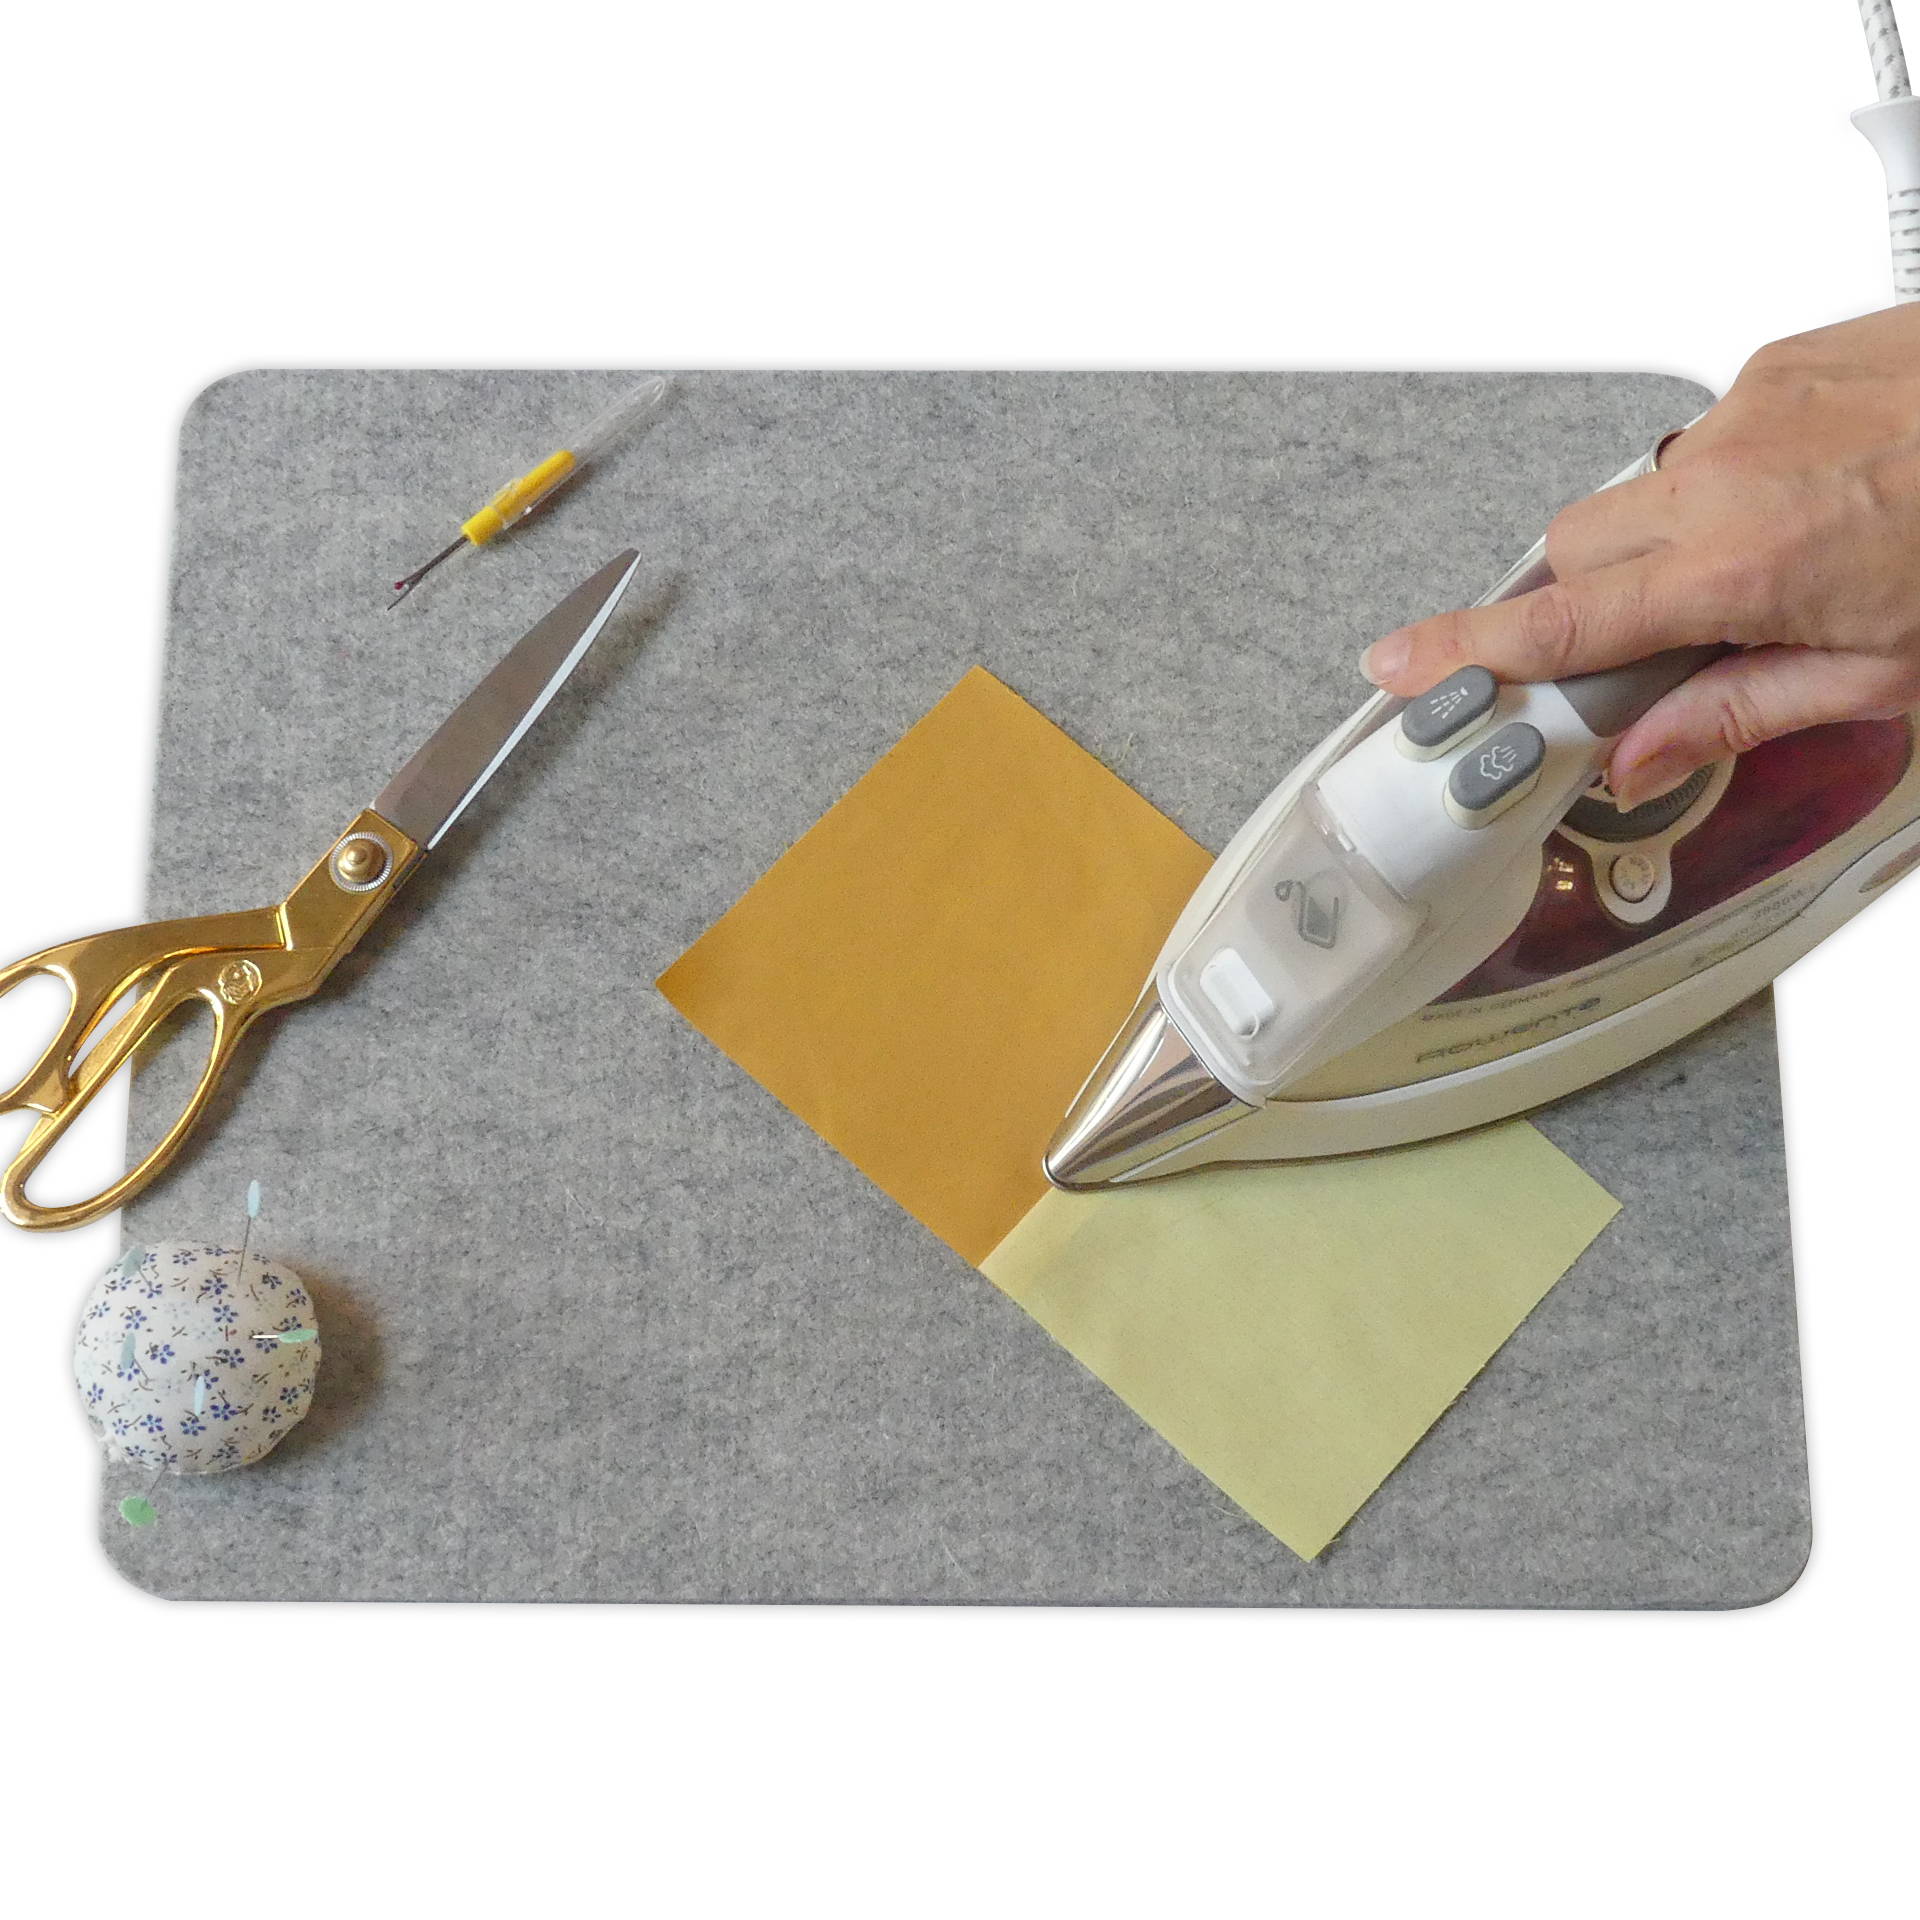 Wool Pressing Mat Ironing Manual